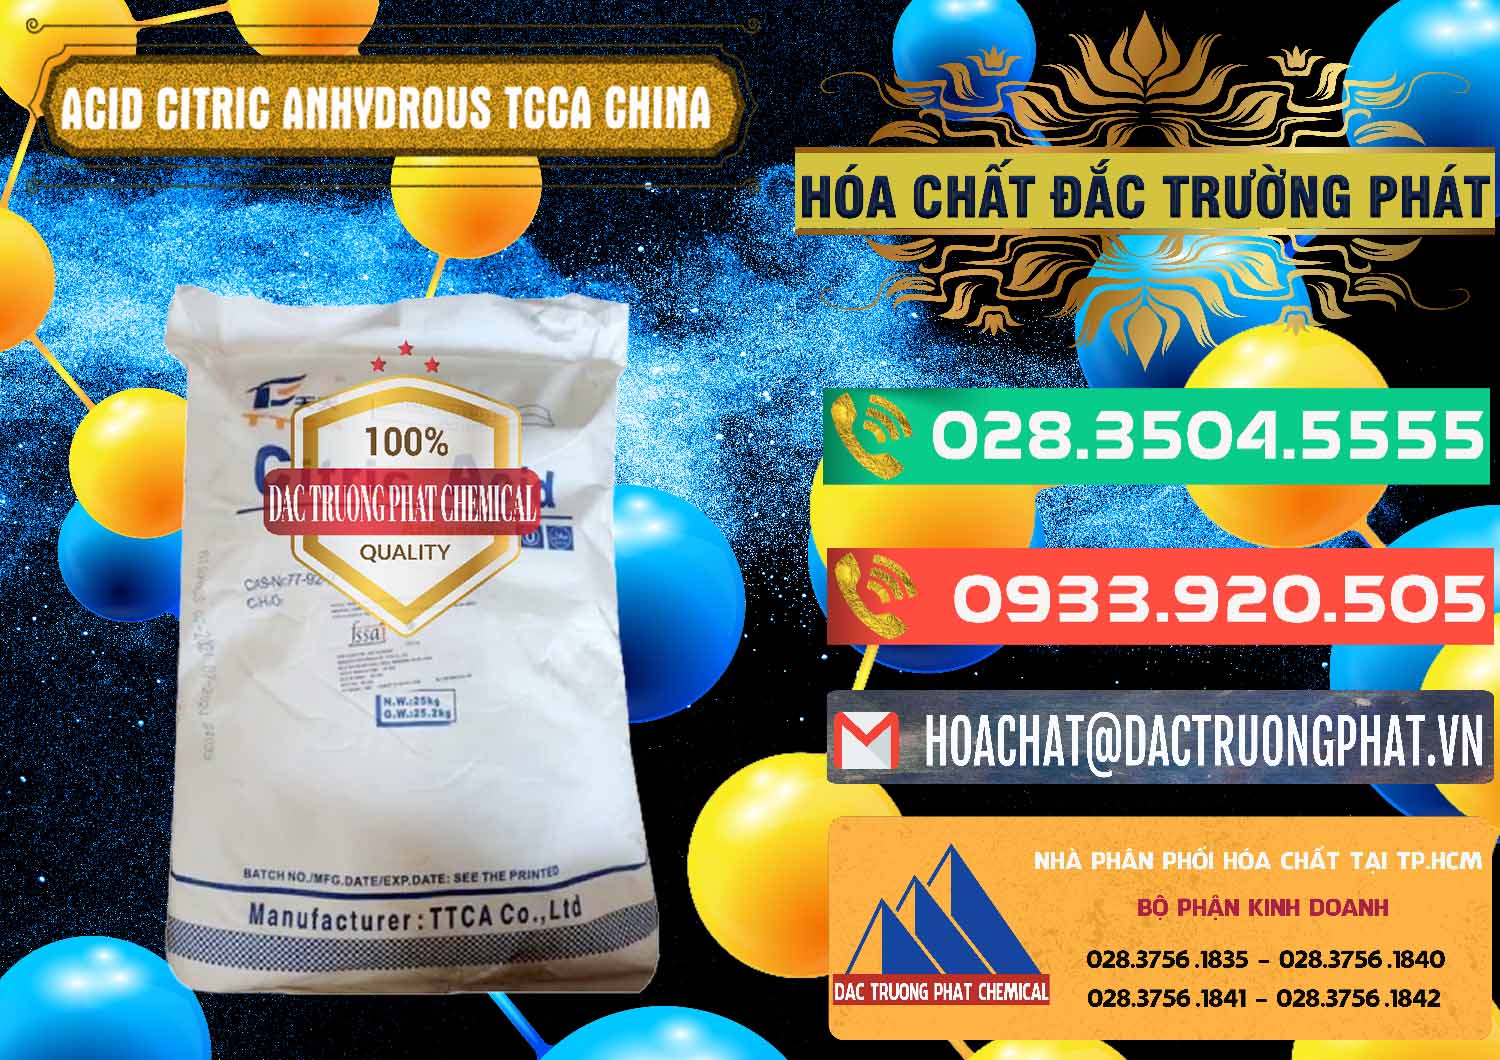 Đơn vị chuyên bán _ phân phối Acid Citric - Axit Citric Anhydrous TCCA Trung Quốc China - 0442 - Cty cung ứng & phân phối hóa chất tại TP.HCM - congtyhoachat.com.vn